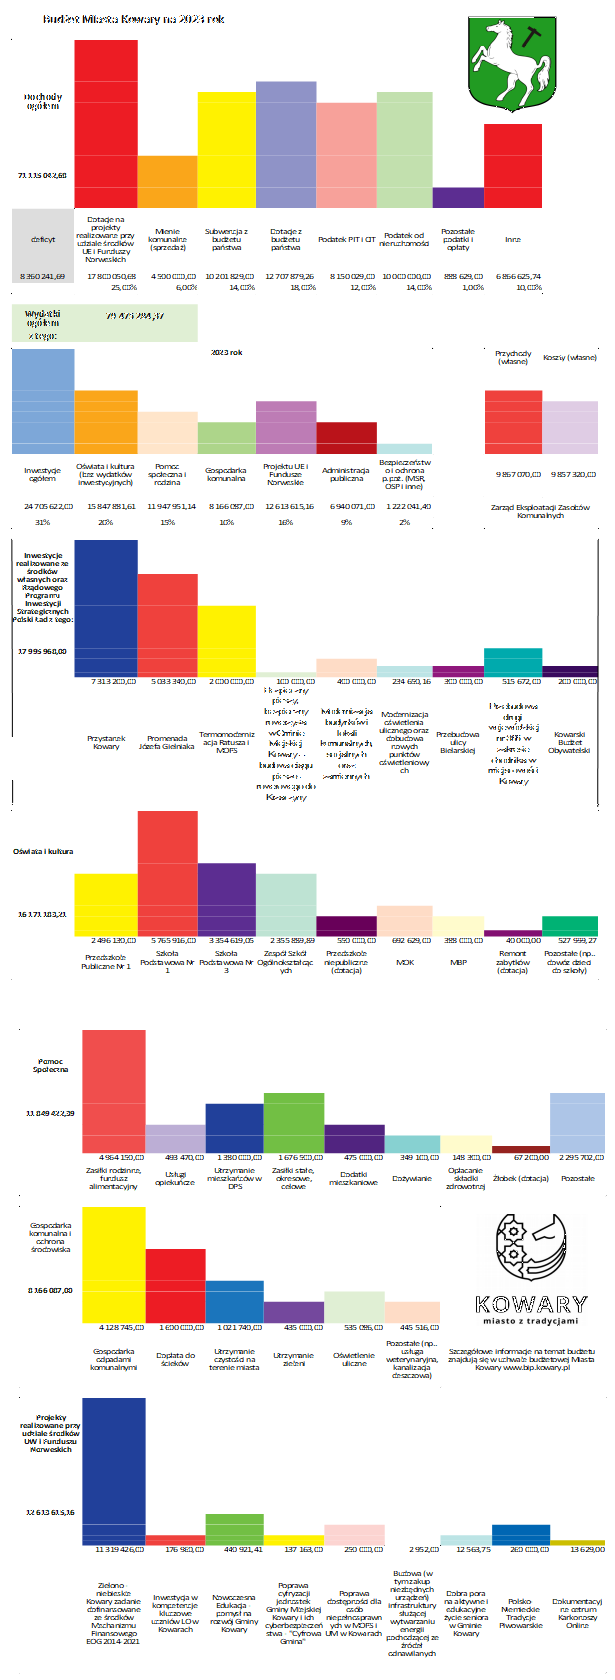 Ikonografika prezentująca budżet Miasta Kowary na rok 2023 - alternatywna wersja z tekstem w pliku pdf - Budżet 2023 BIP.pdf